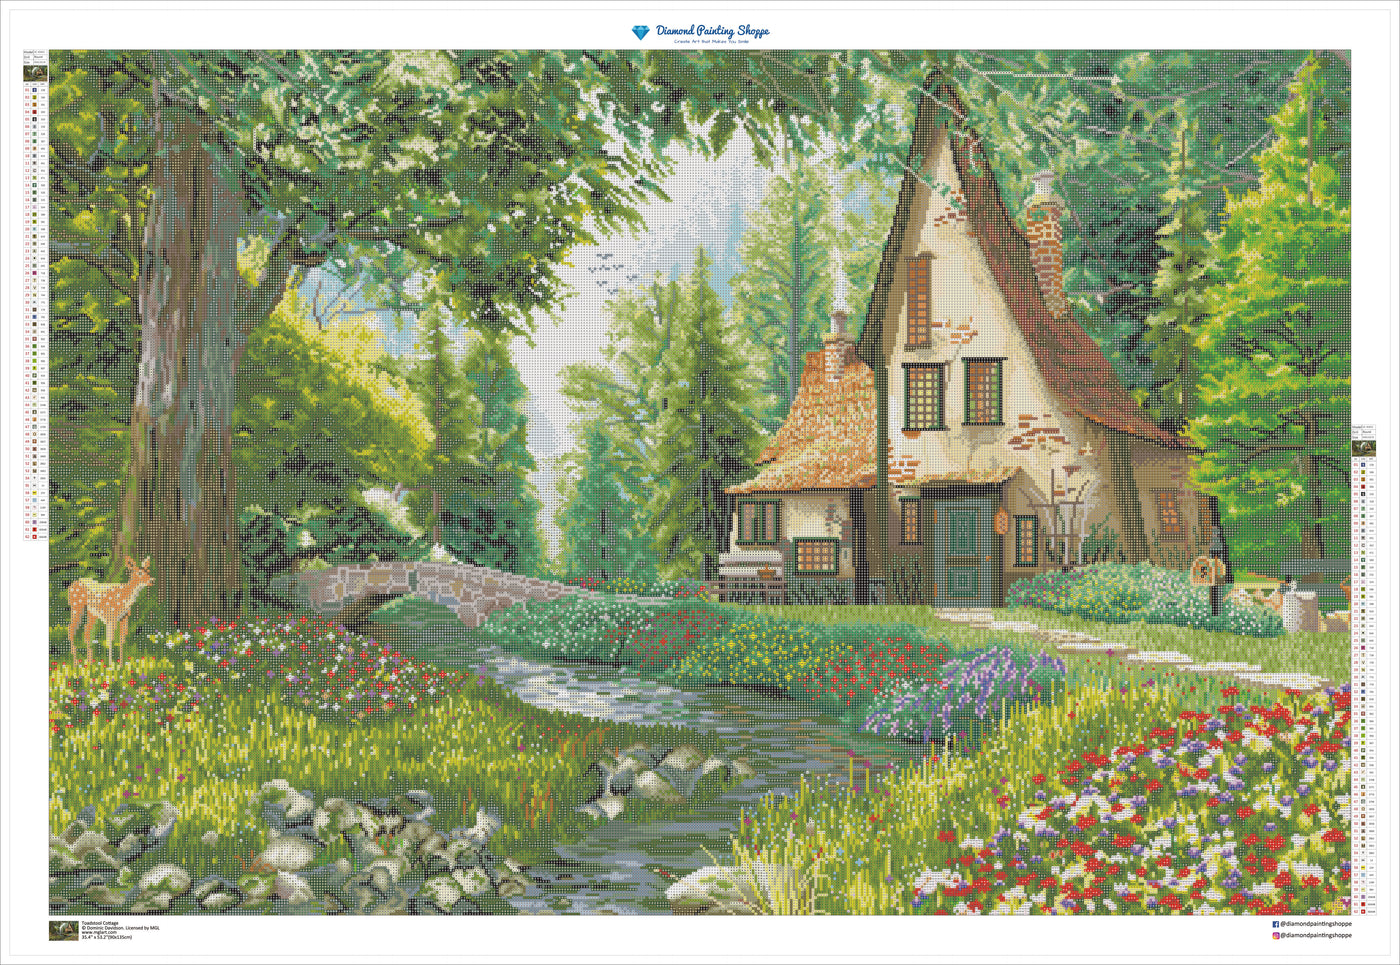 Toadstool Cottage